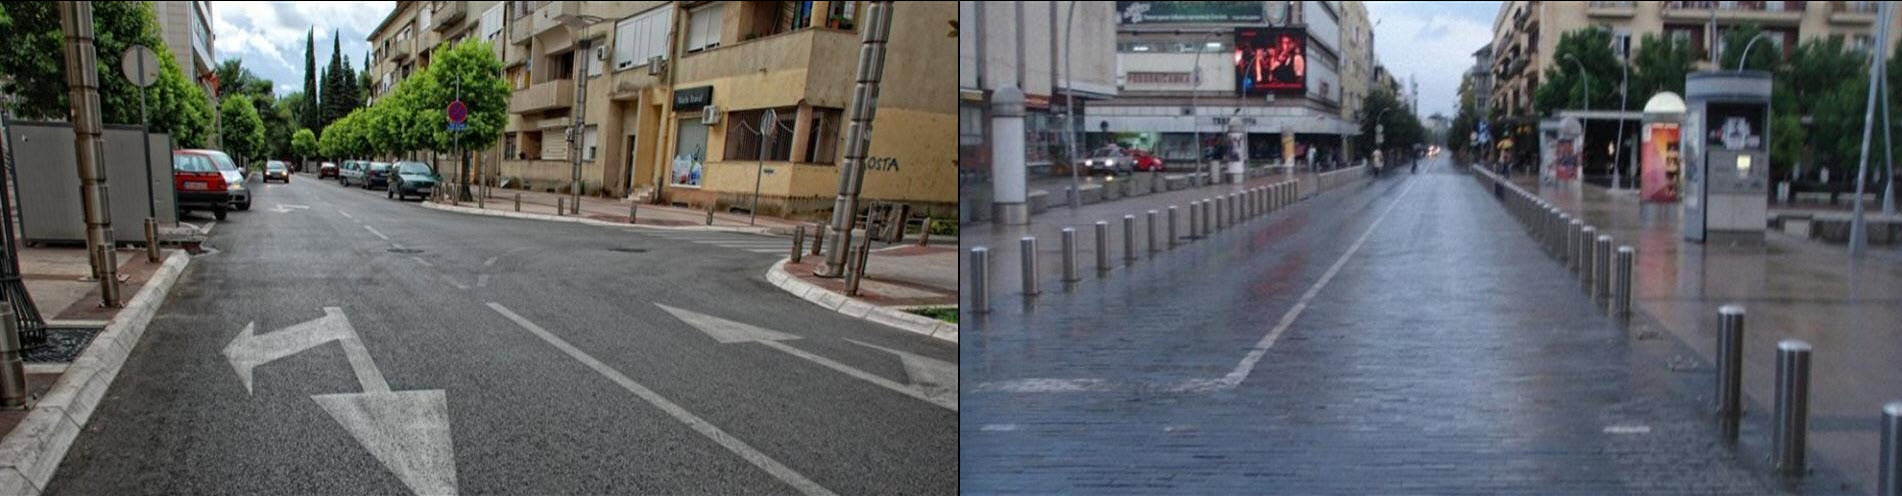 Planiranje i projektovanje saobraćajnica Podgorica Crna Gora